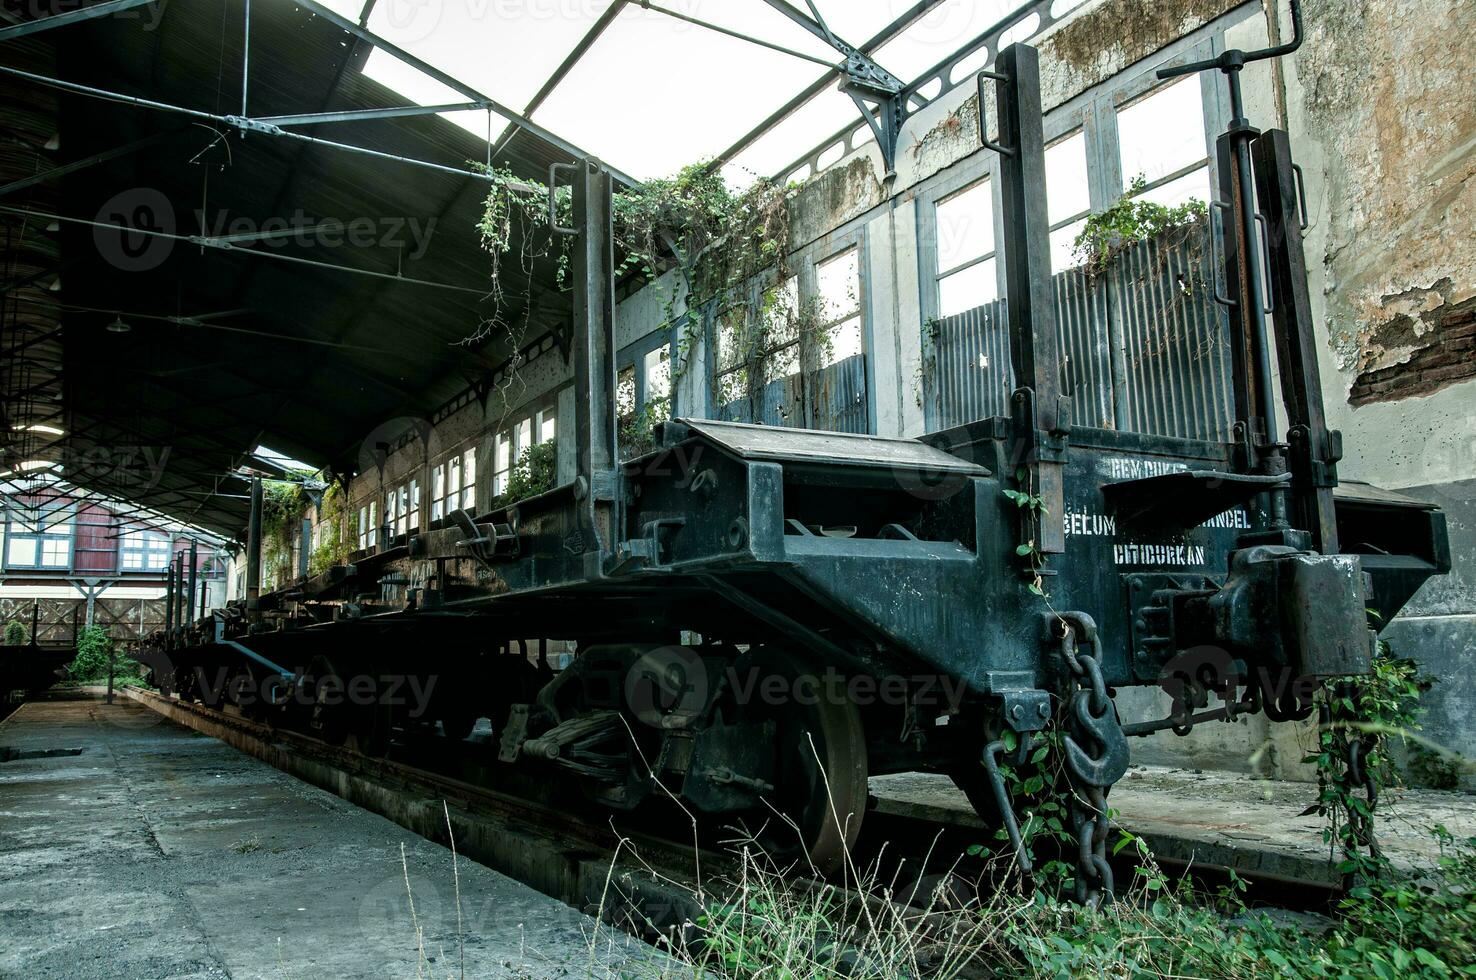 abandonné train dépôt photo